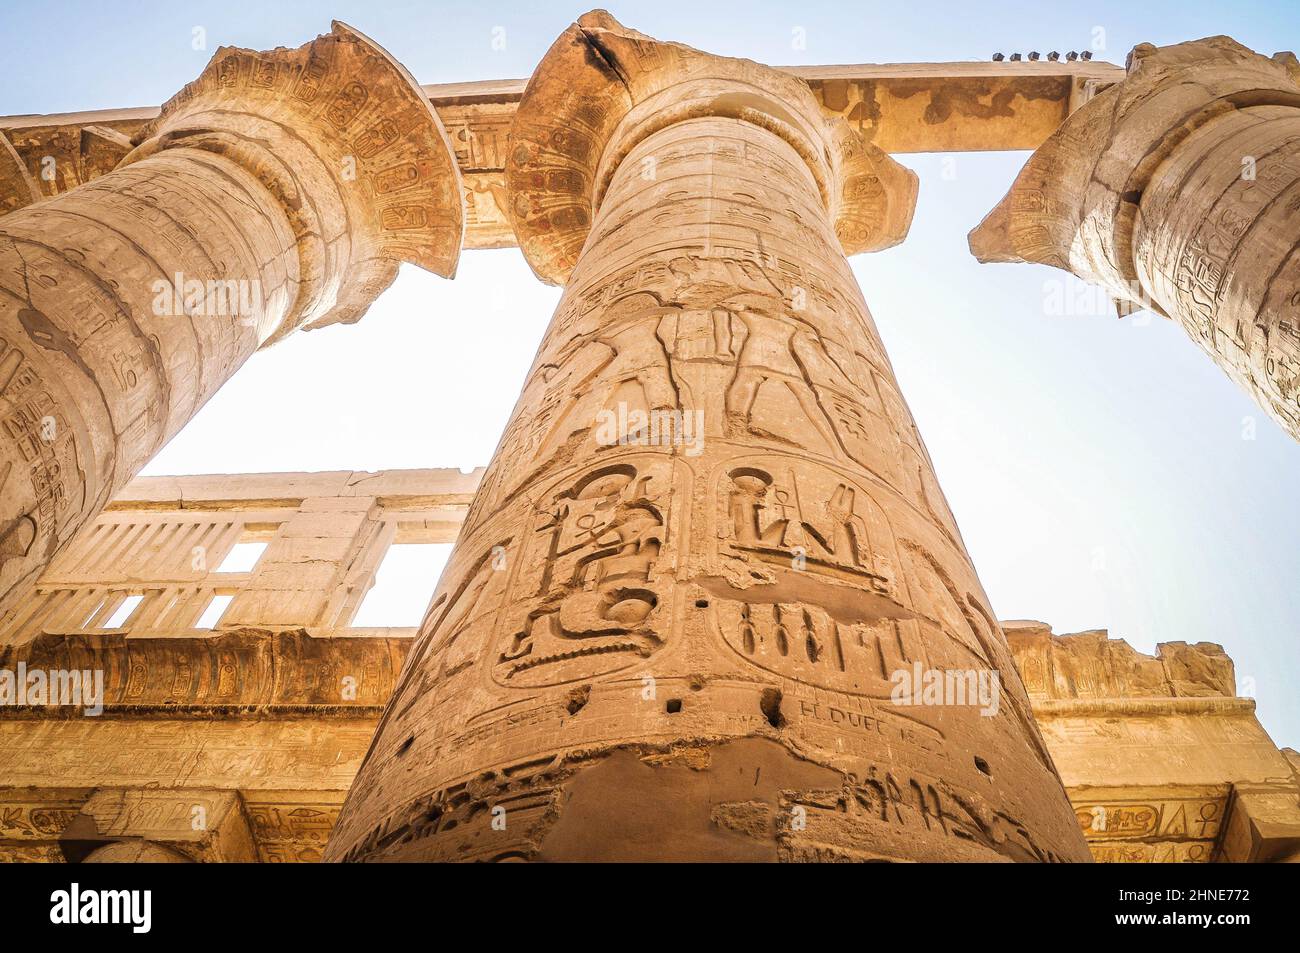 El complejo del templo de Karnak, conocido comúnmente como Karnak, comprende una vasta mezcla de templos decaídos, pilones, capillas y otros edificios cerca de Luxor, Egipto. Foto de stock